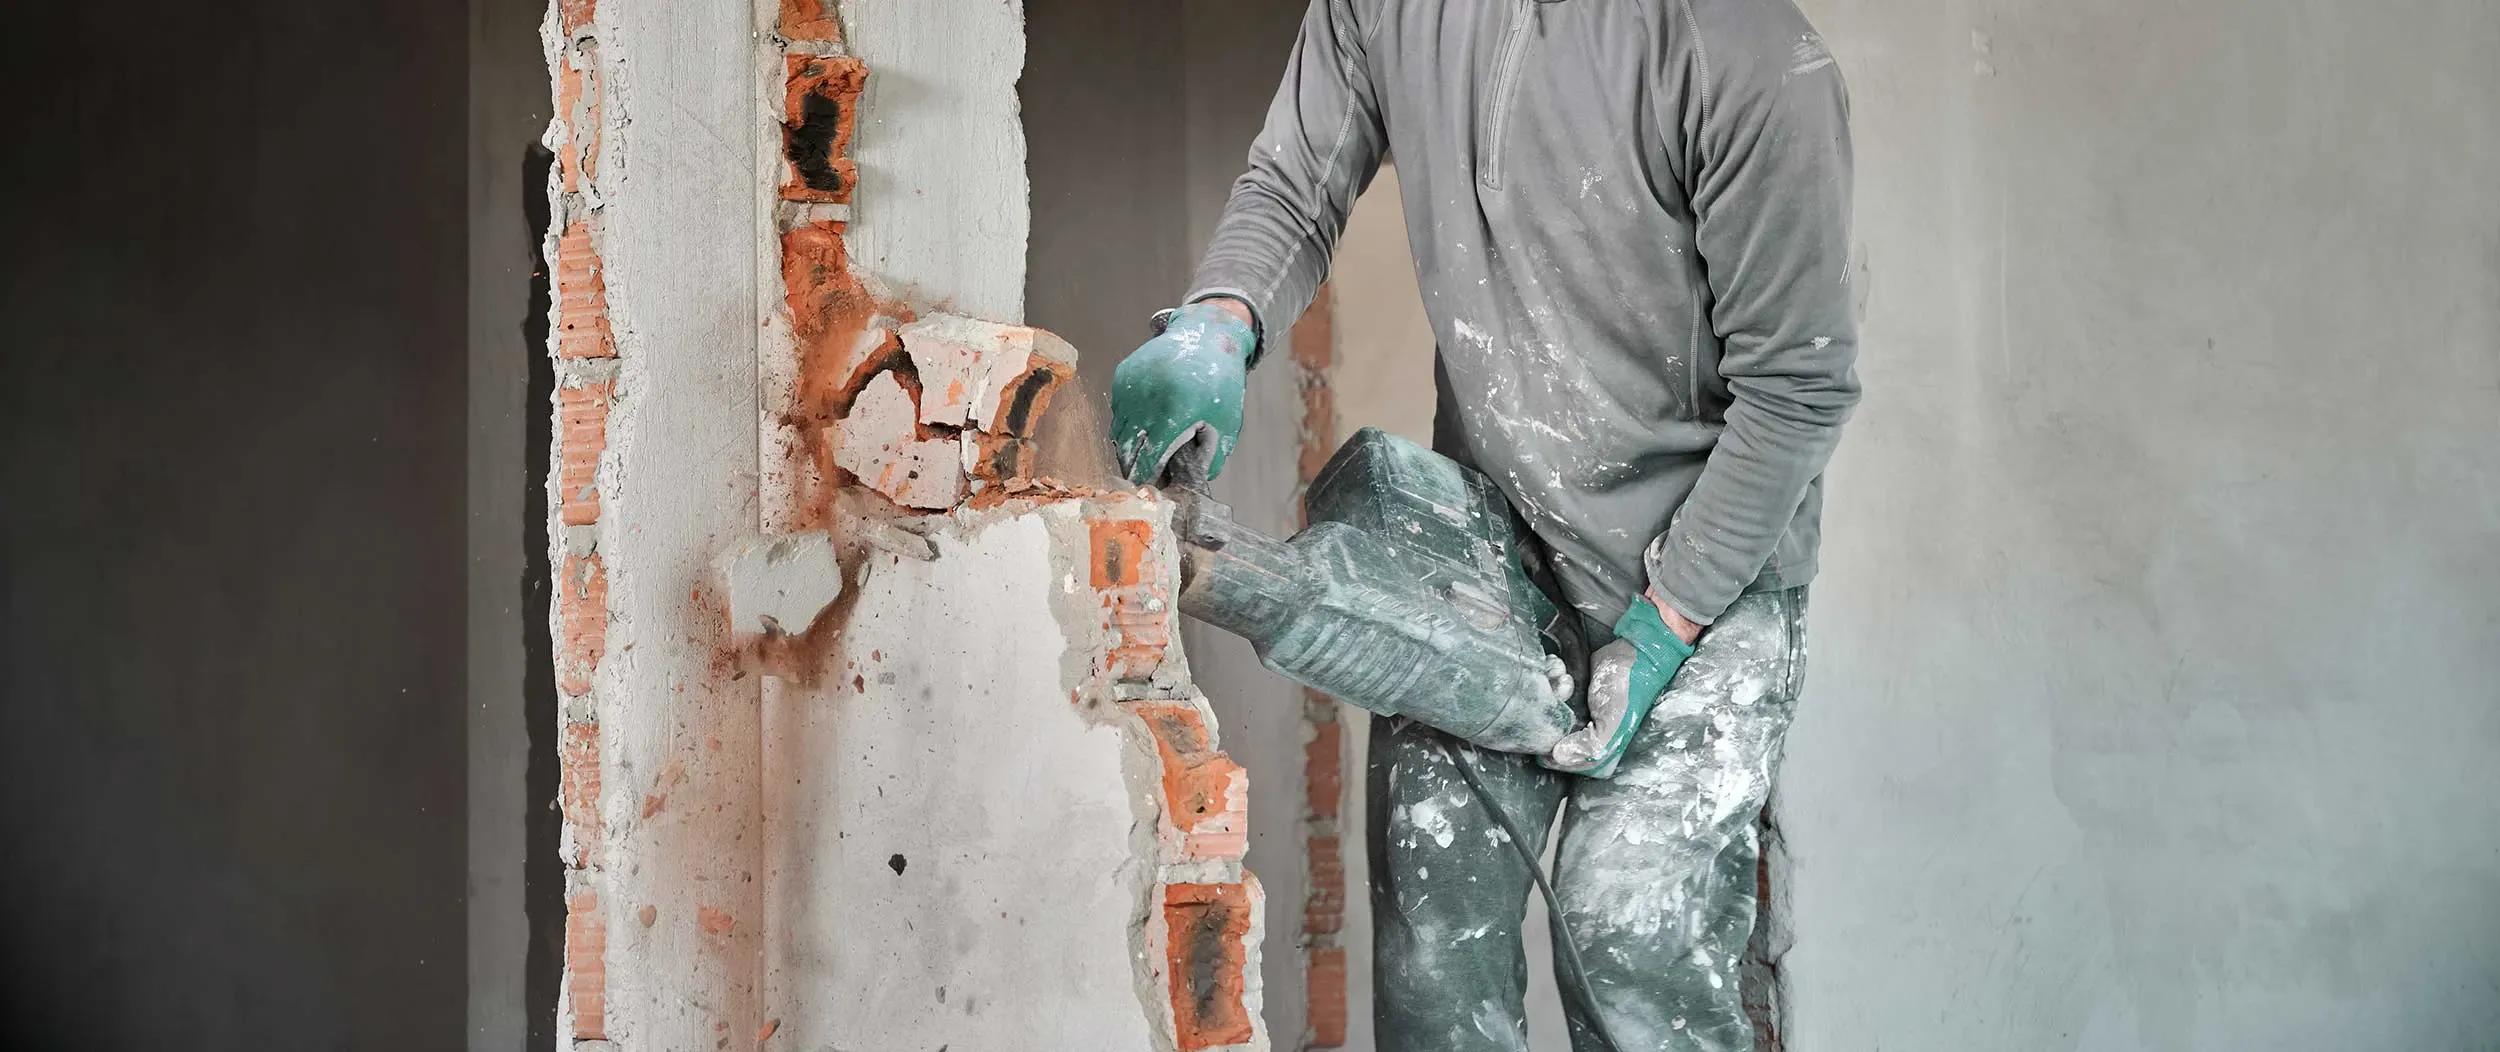 Arbetare i skyddshjälm med perforator som slutför dekonstruktion av tegelvägg